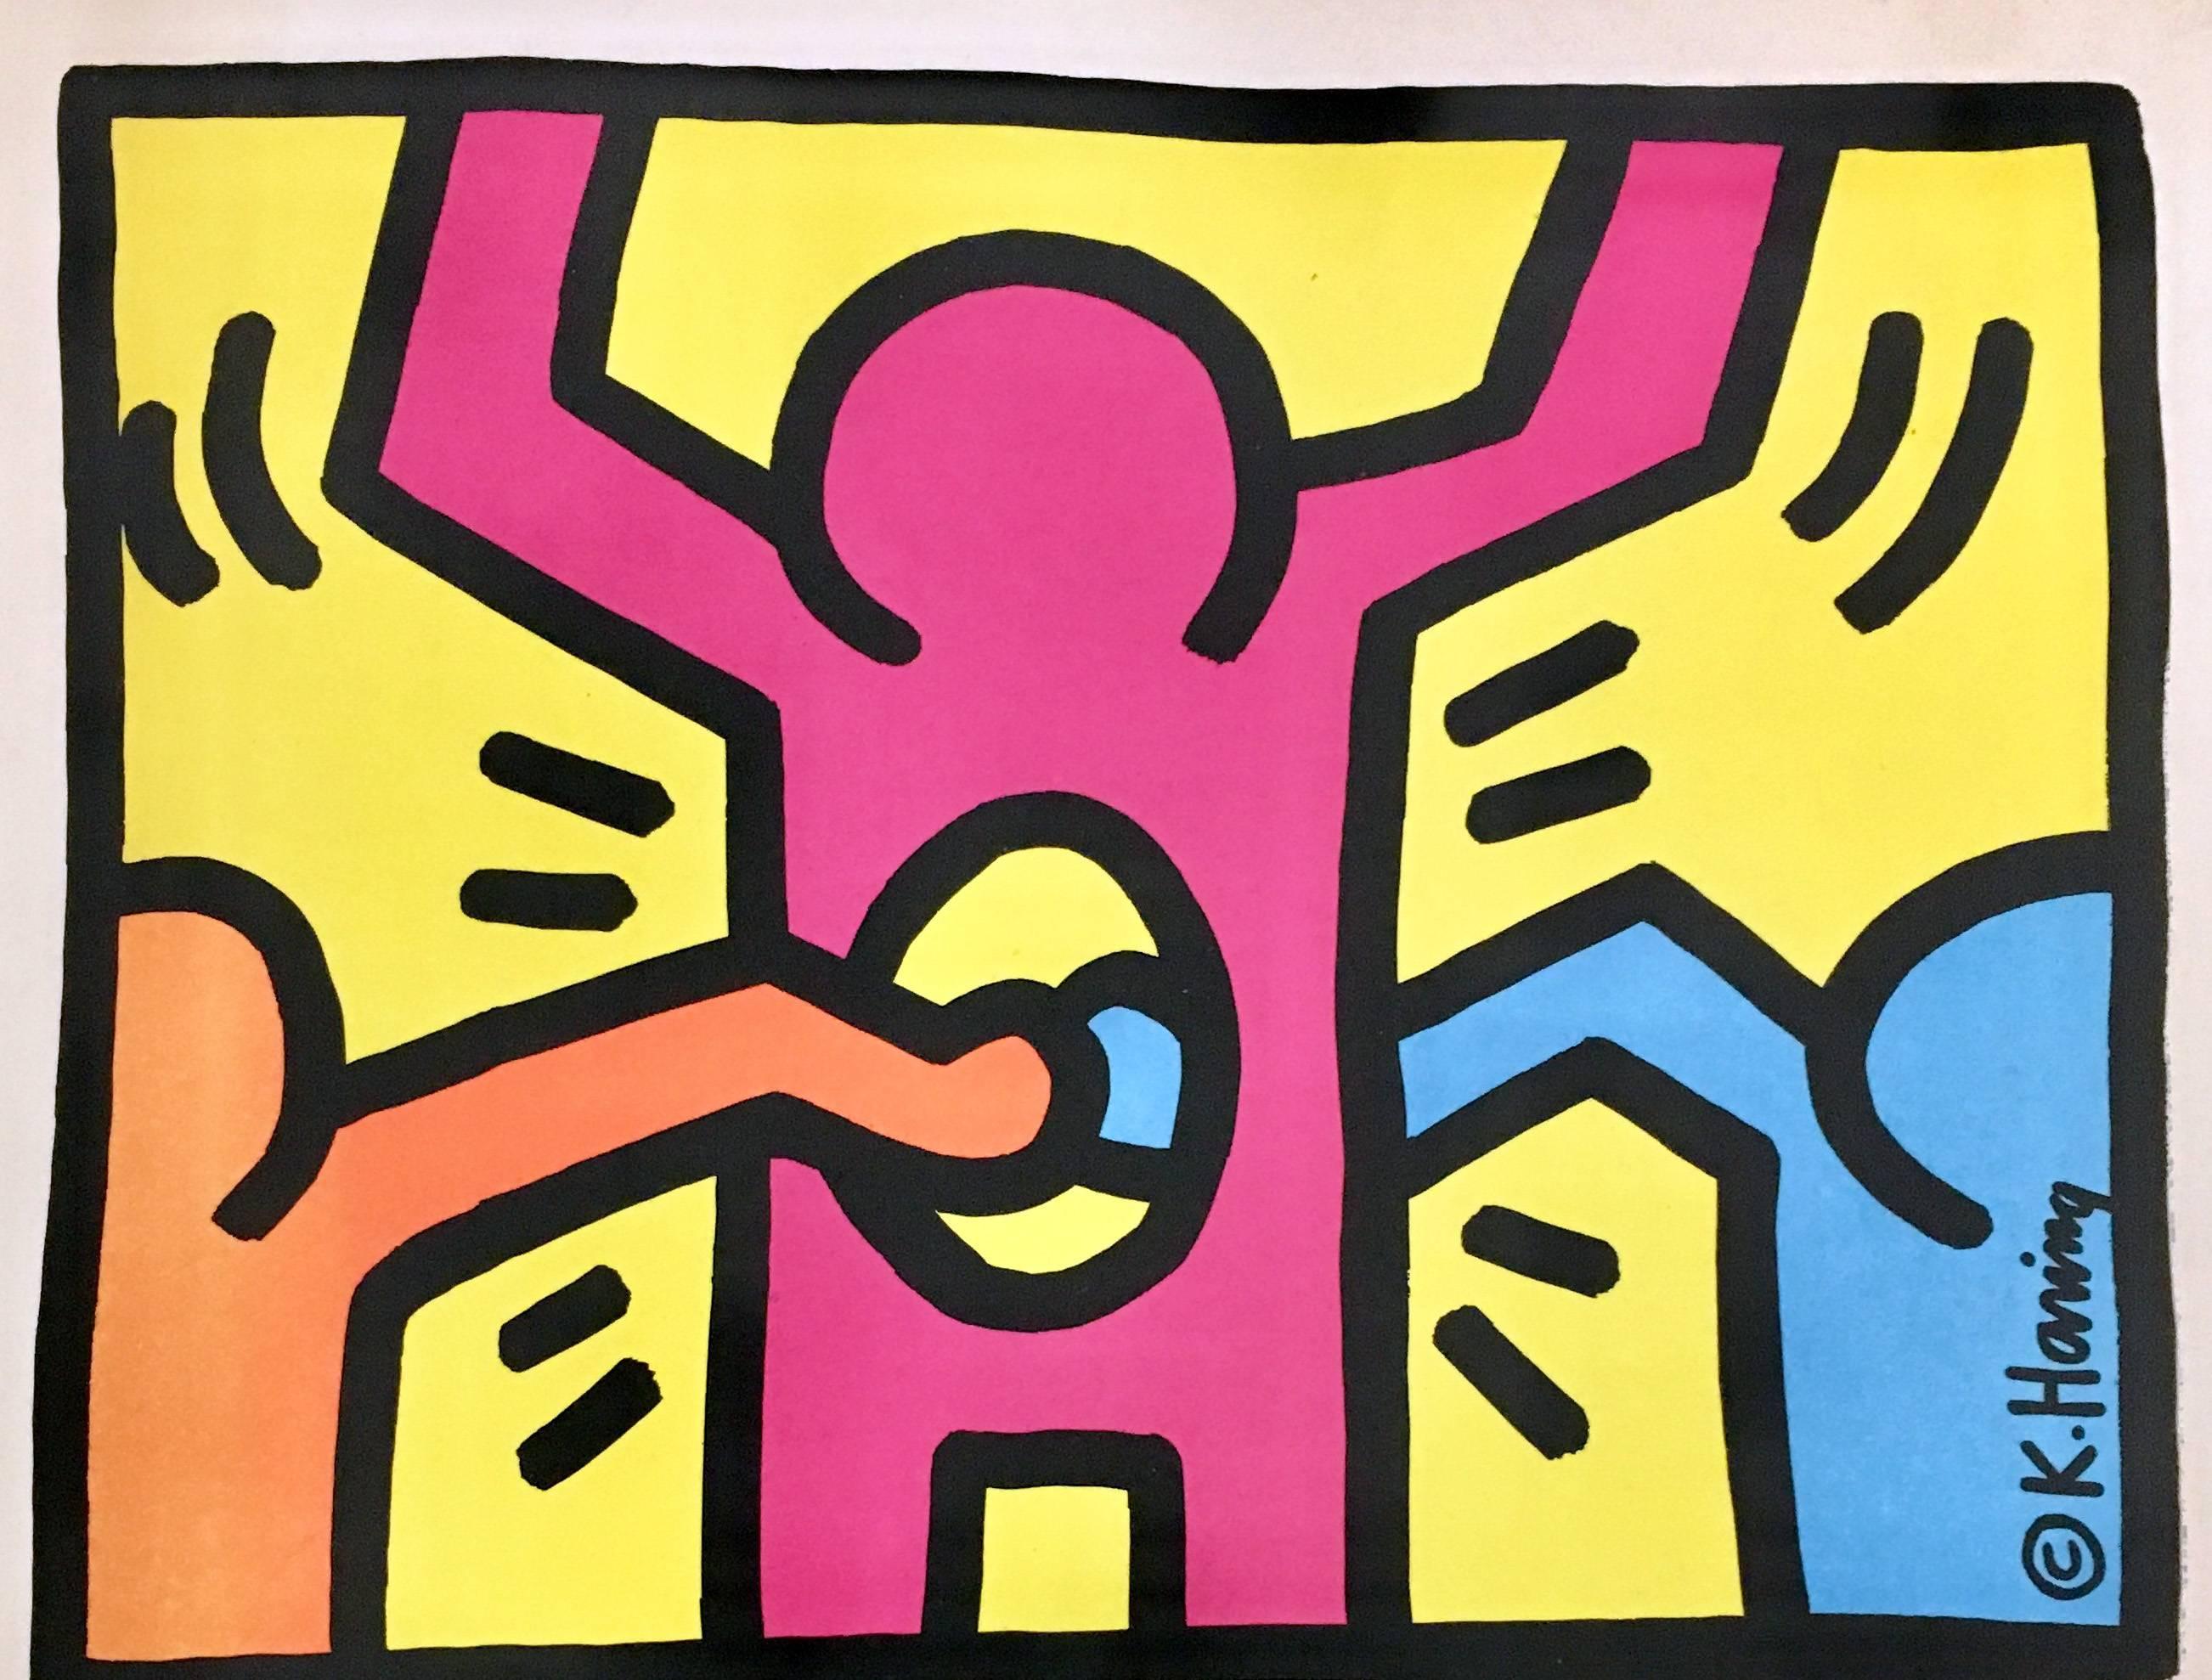 Keith Haring Stedelijk Museum, Amsterdam, Pays-Bas, 15 mars - 12 mai 1986 :

Le catalogue rare et très recherché de la première grande exposition solo de Keith Haring dans un musée. Les couvertures avant et arrière sont magnifiquement sérigraphiées